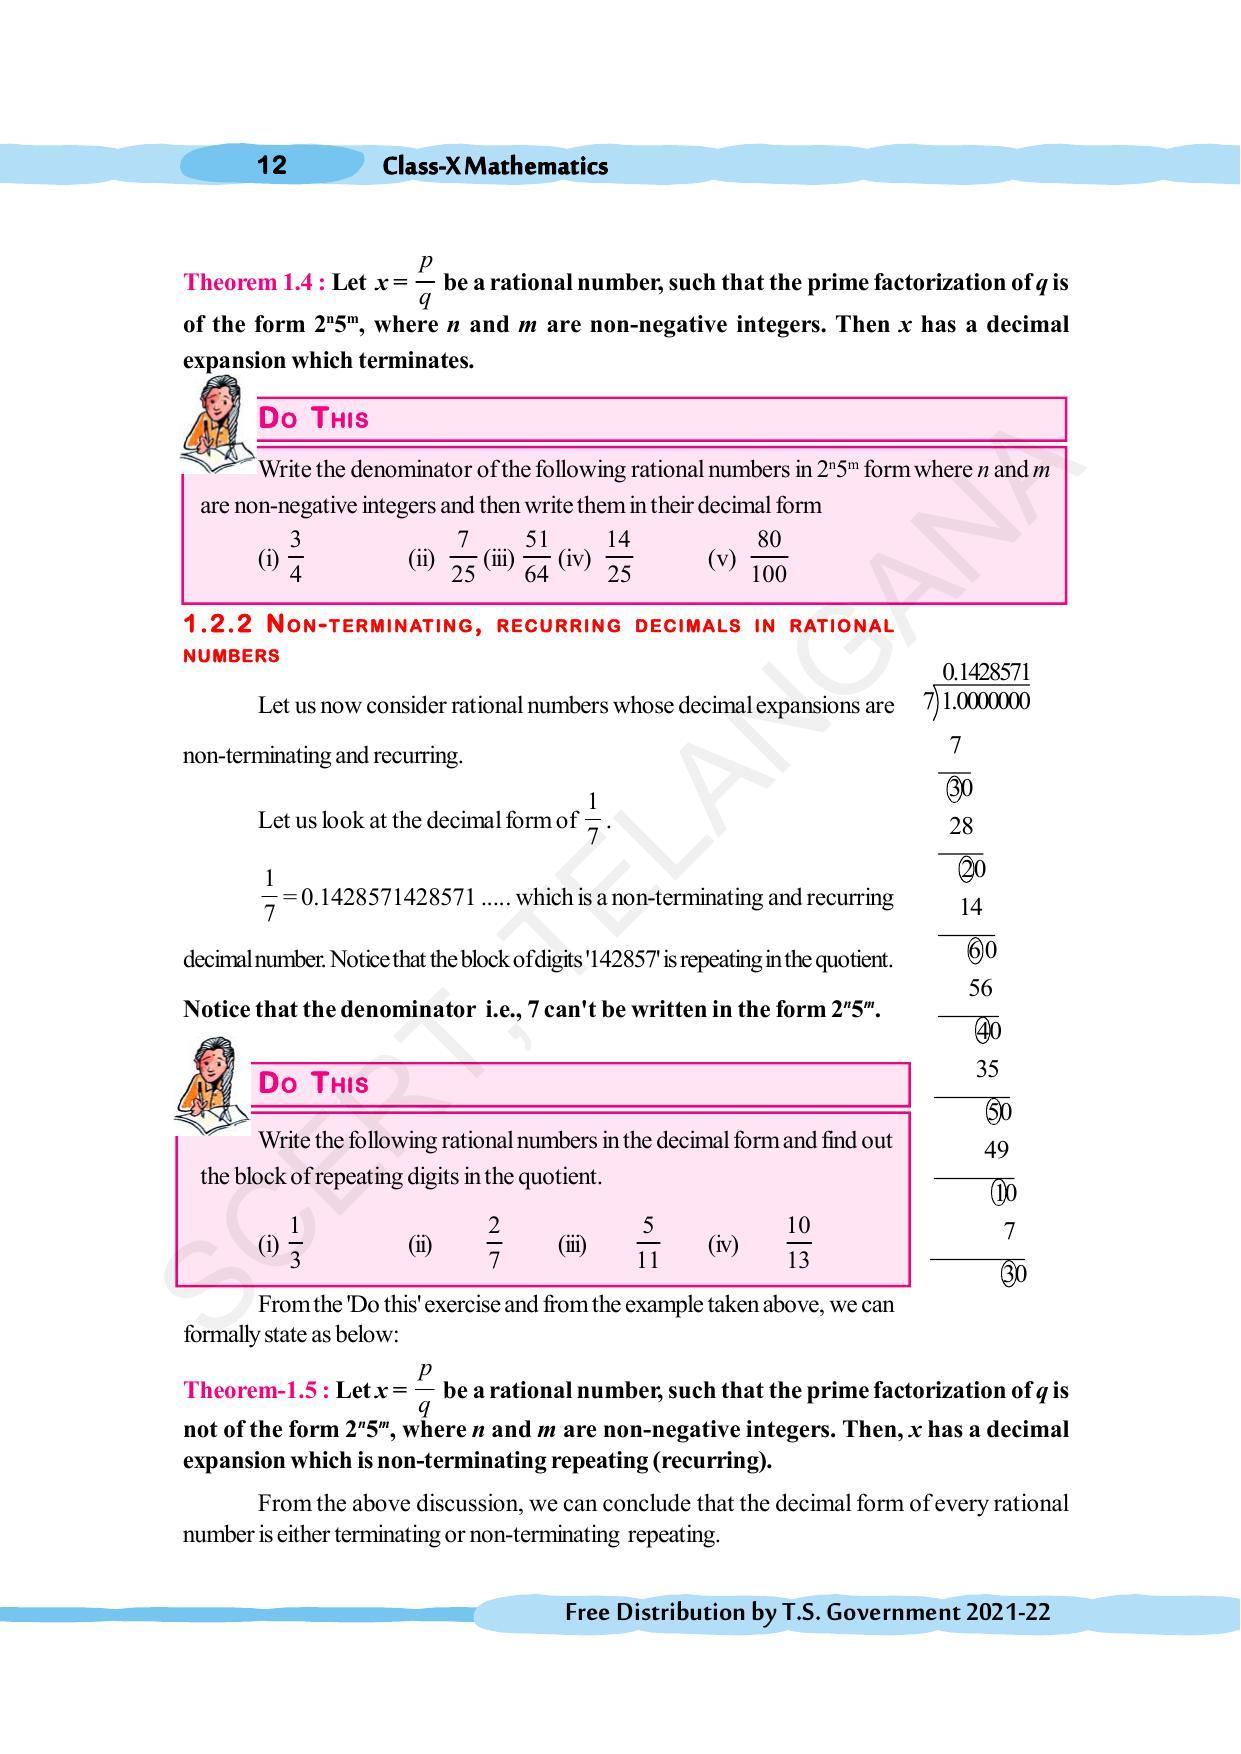 TS SCERT Class 10 Maths (English Medium) Text Book - Page 22